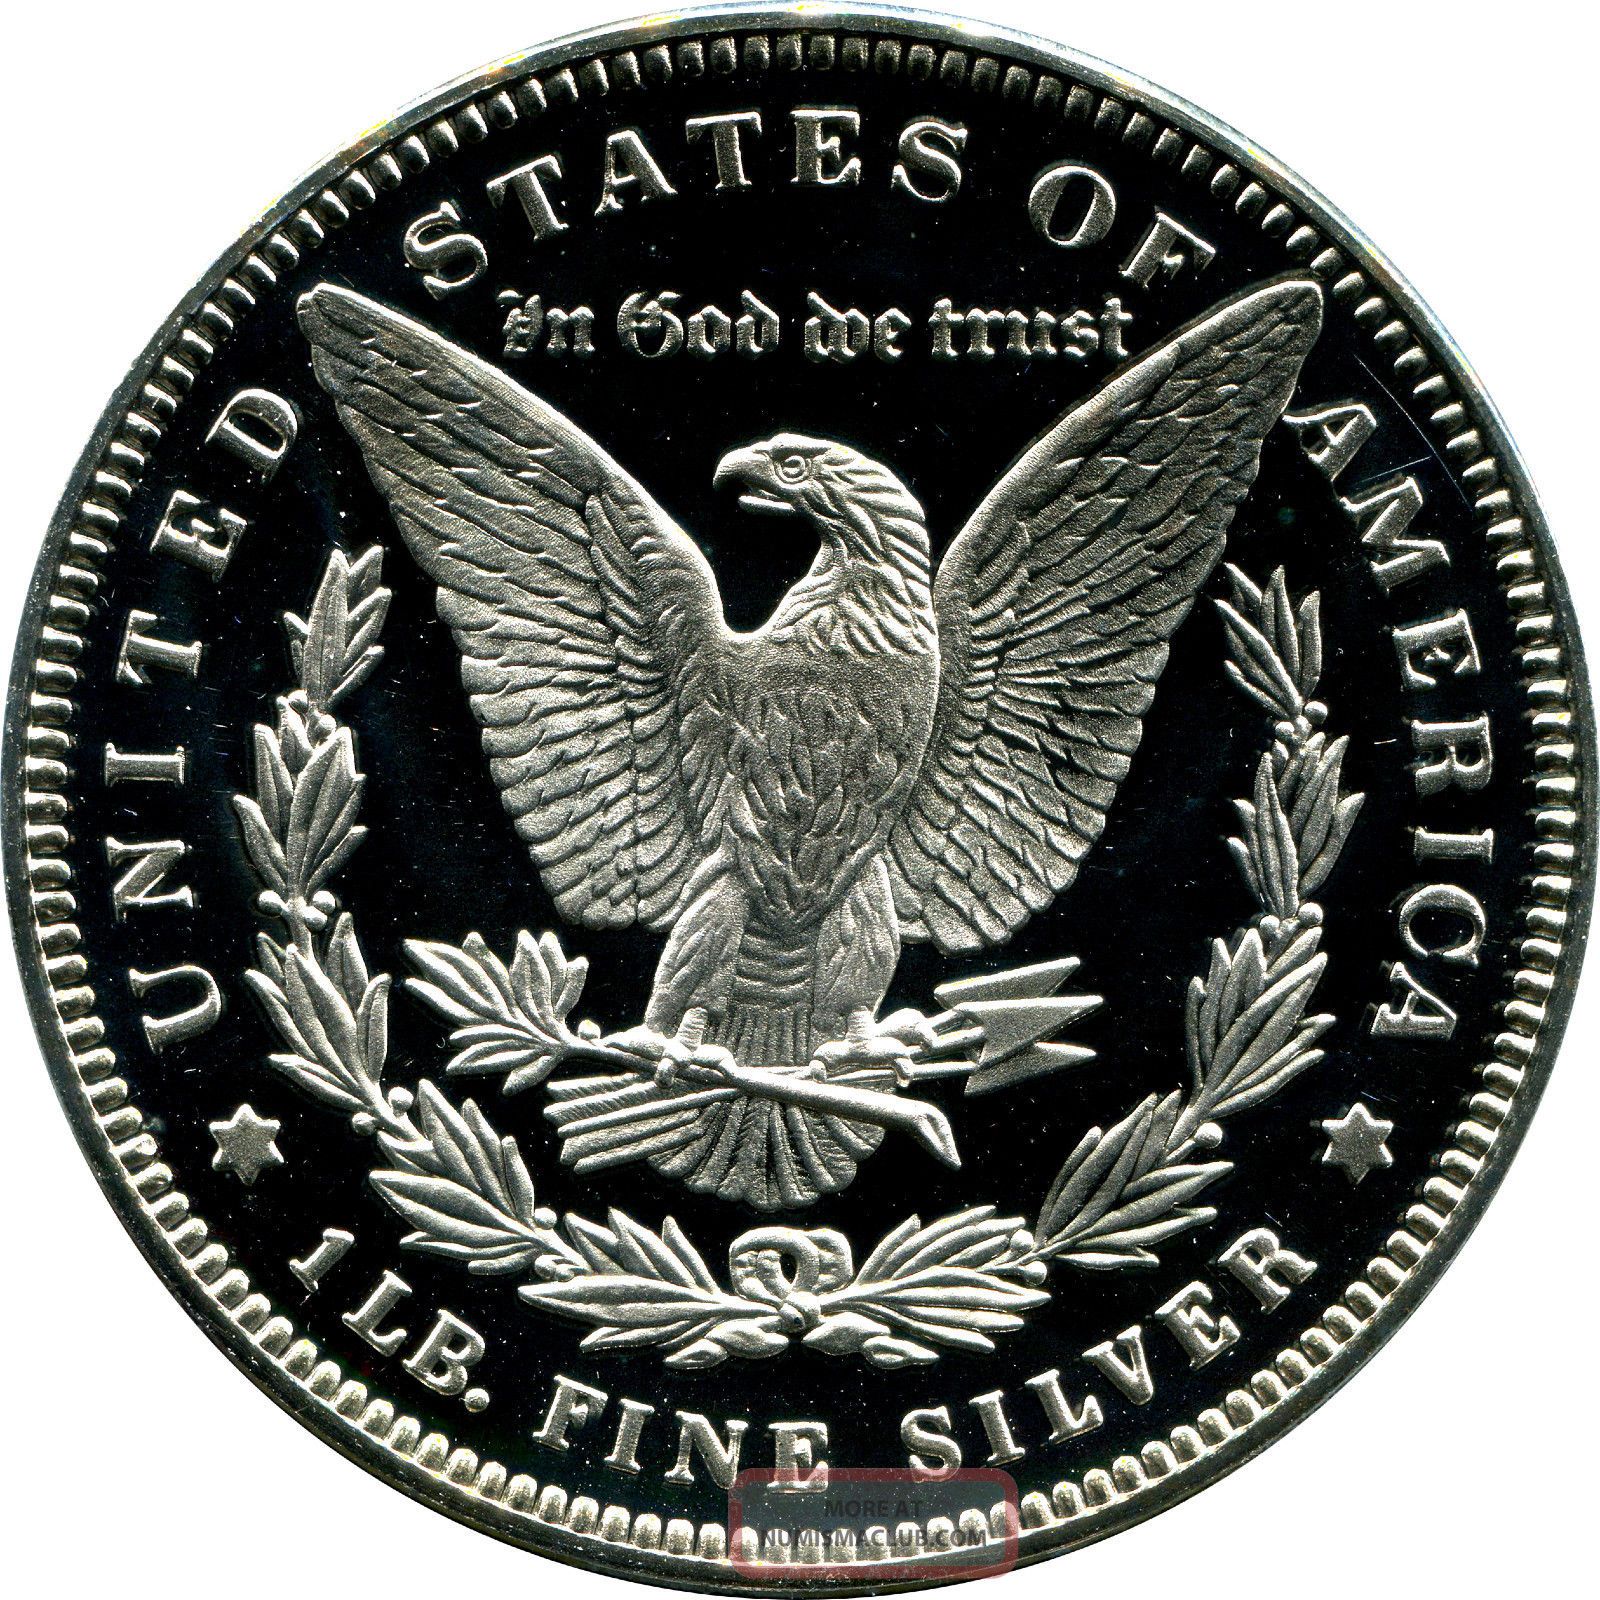 One Troy Pound. 999 Fine Silver 1888 Dollar Replica